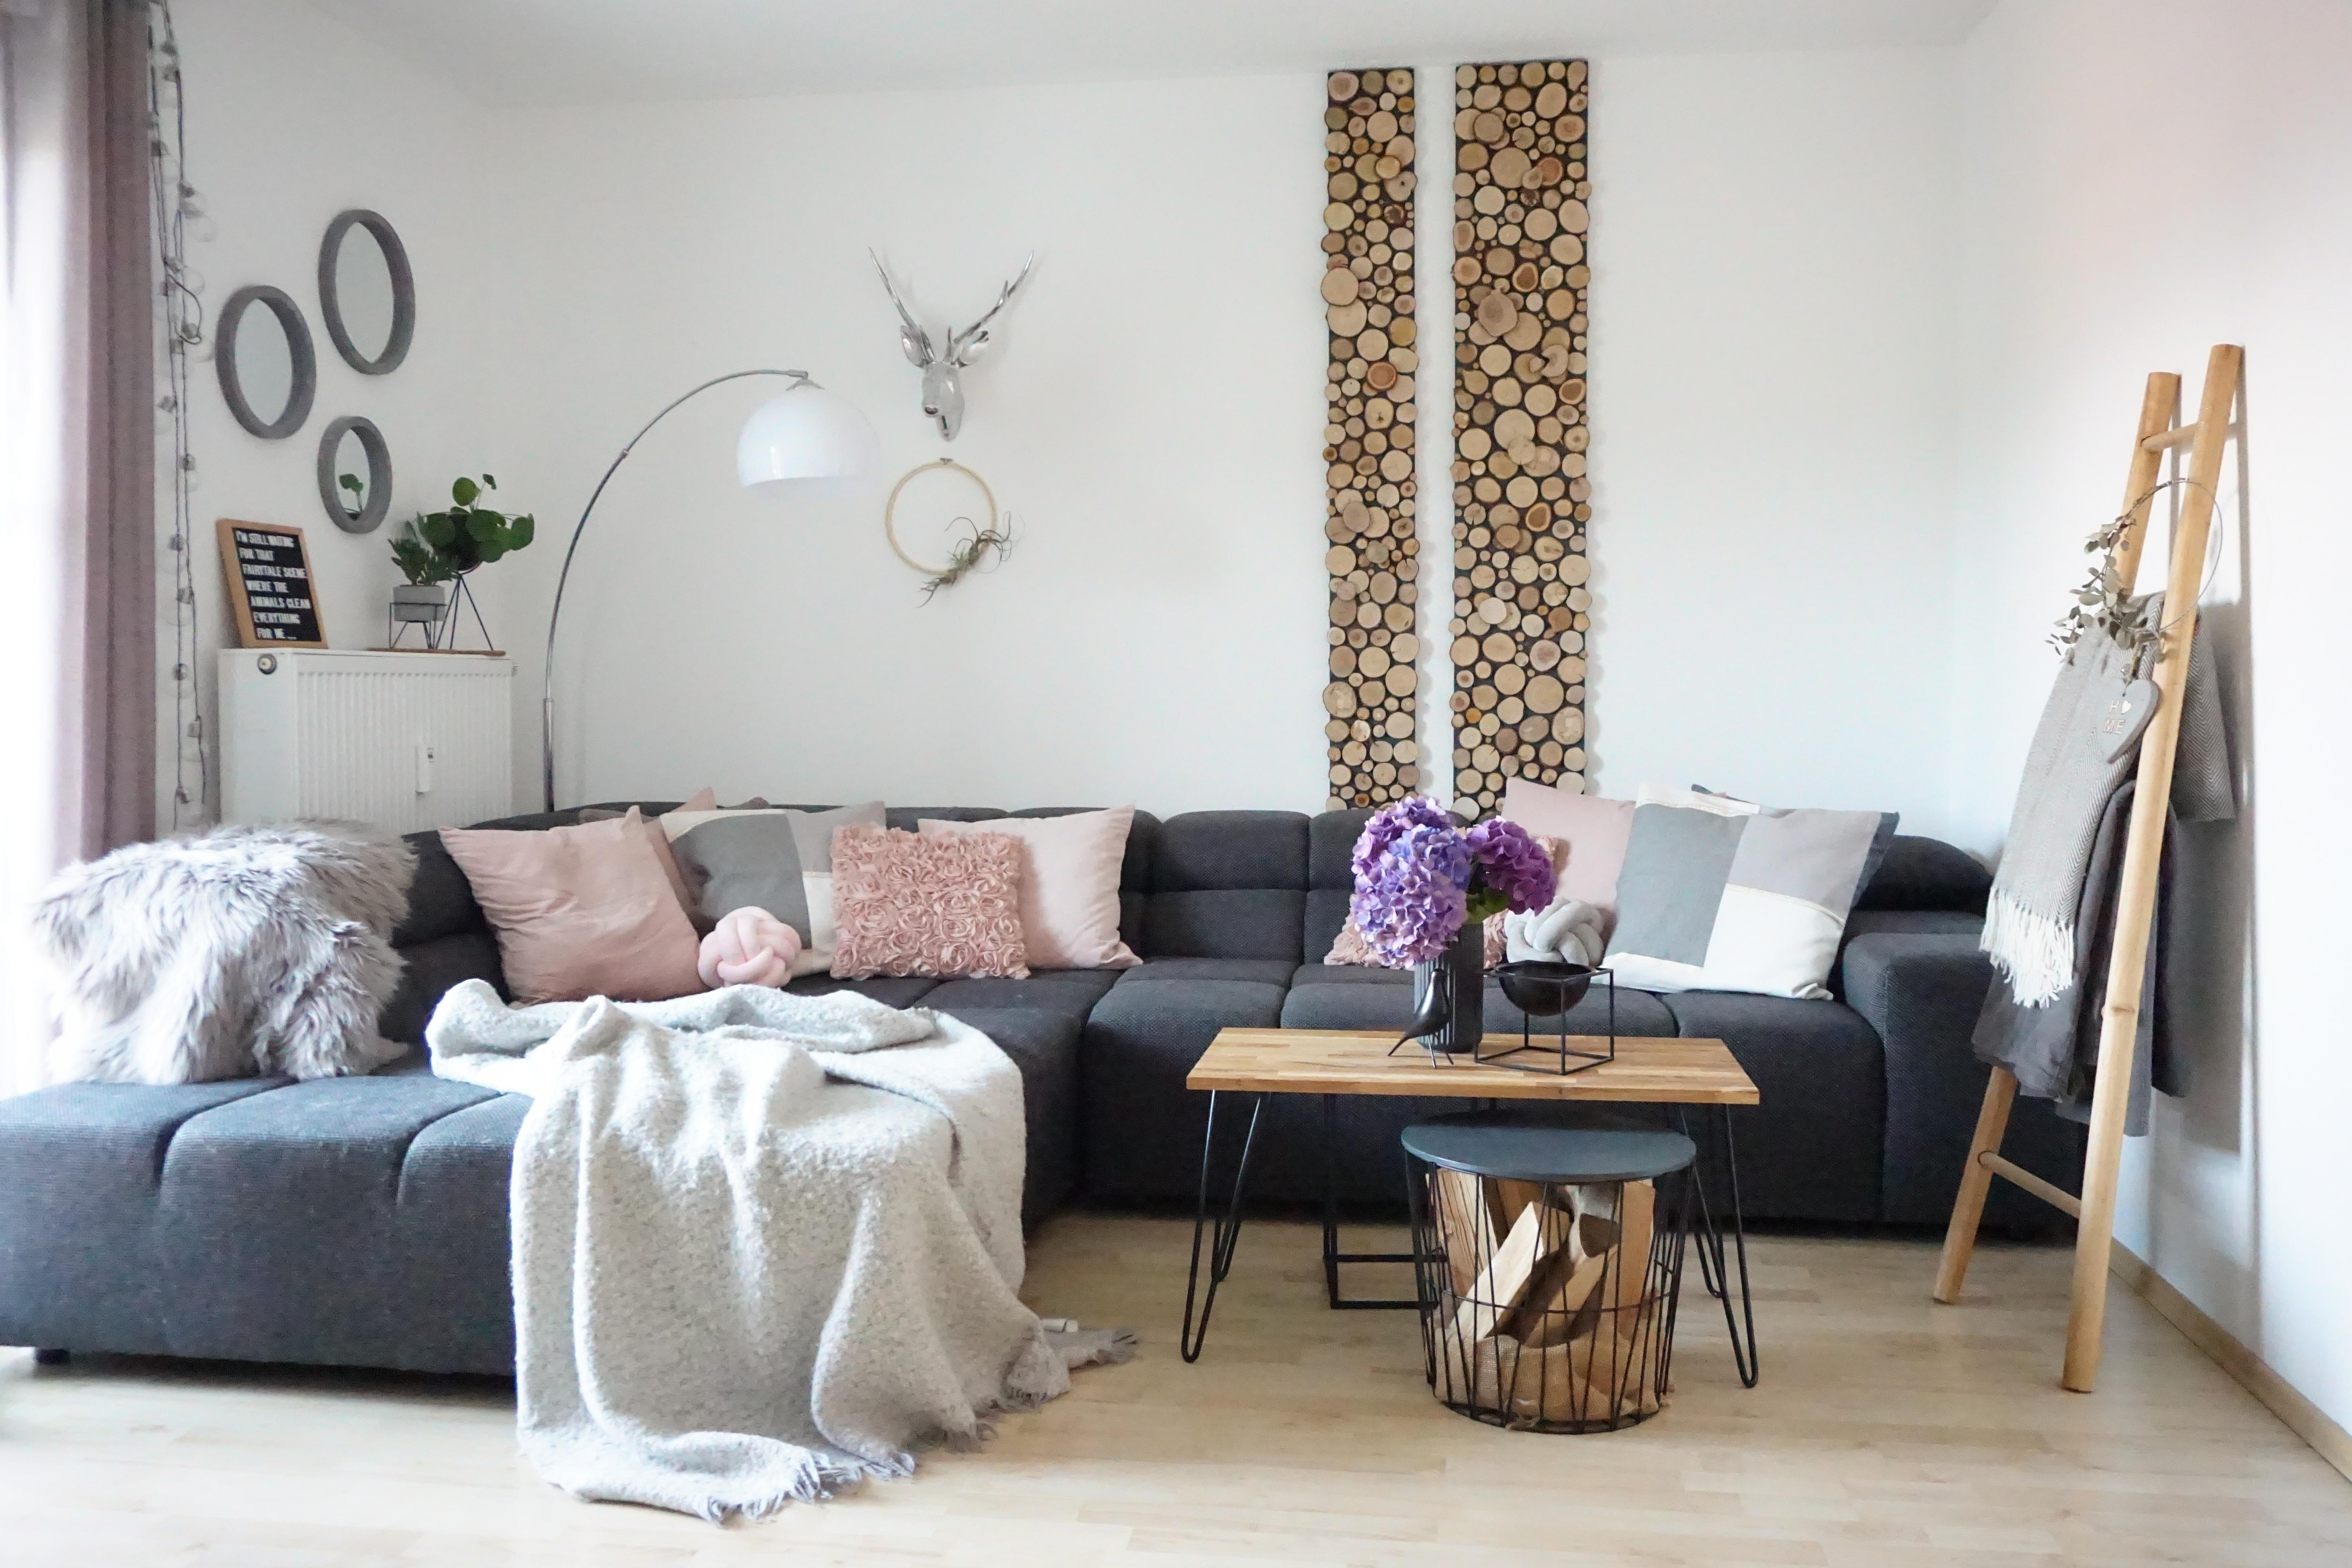 #couchliebt #wohnzimmer #livingroom #leiter #home #livingroom #couch #kuschelplatz